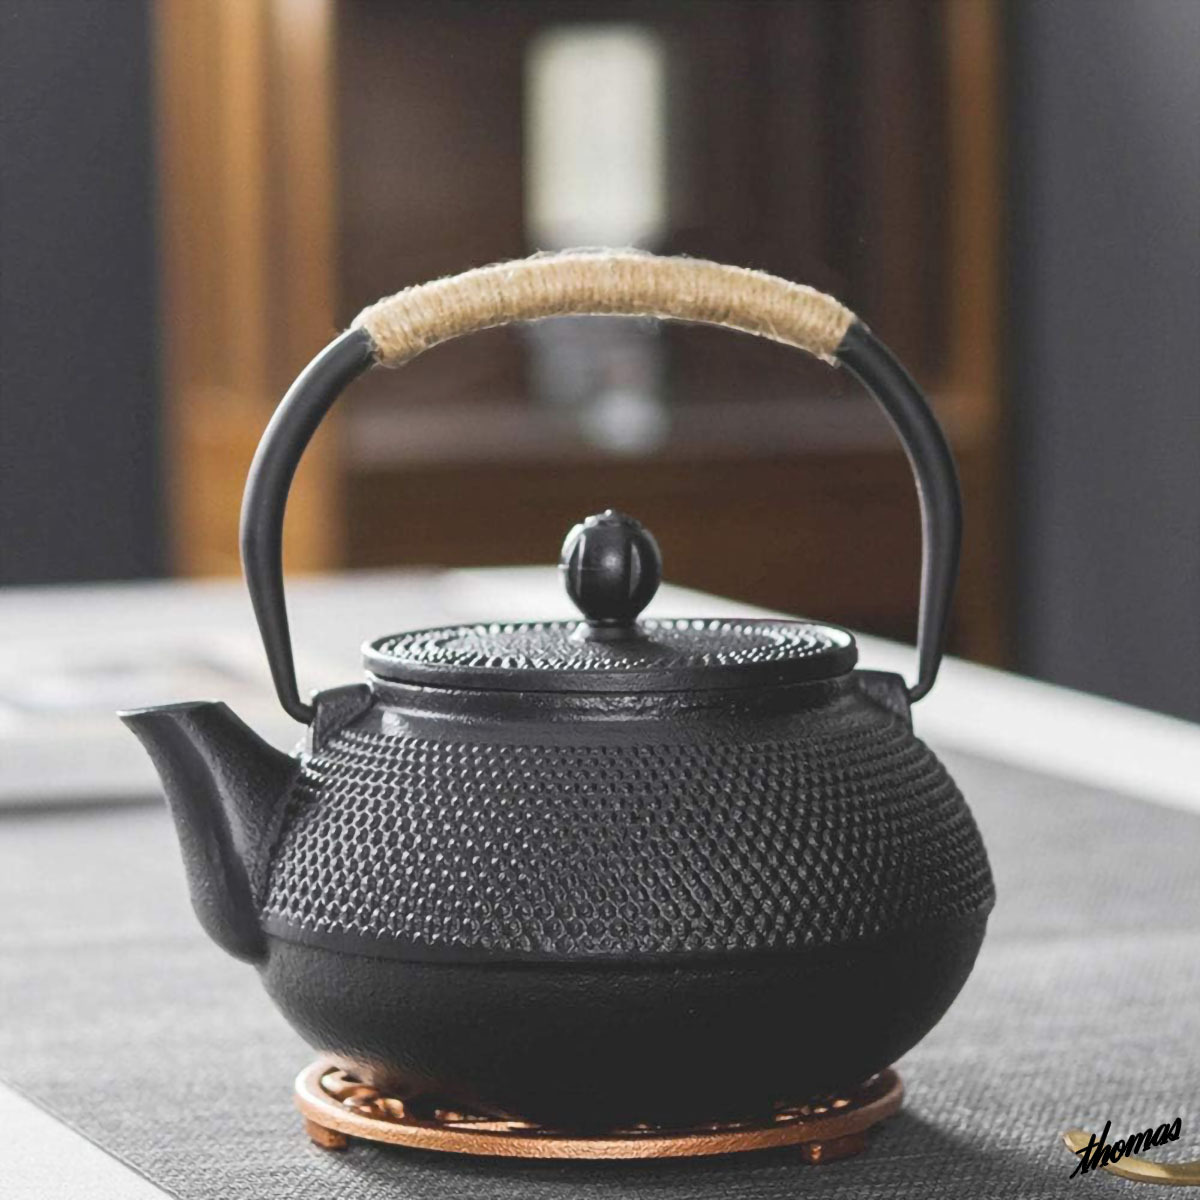 ◆ Рекомендуется в качестве стильного подарка ◆ Железный чайник 600 мл газа Ih Совместимый с внутренним чайником на гриле.